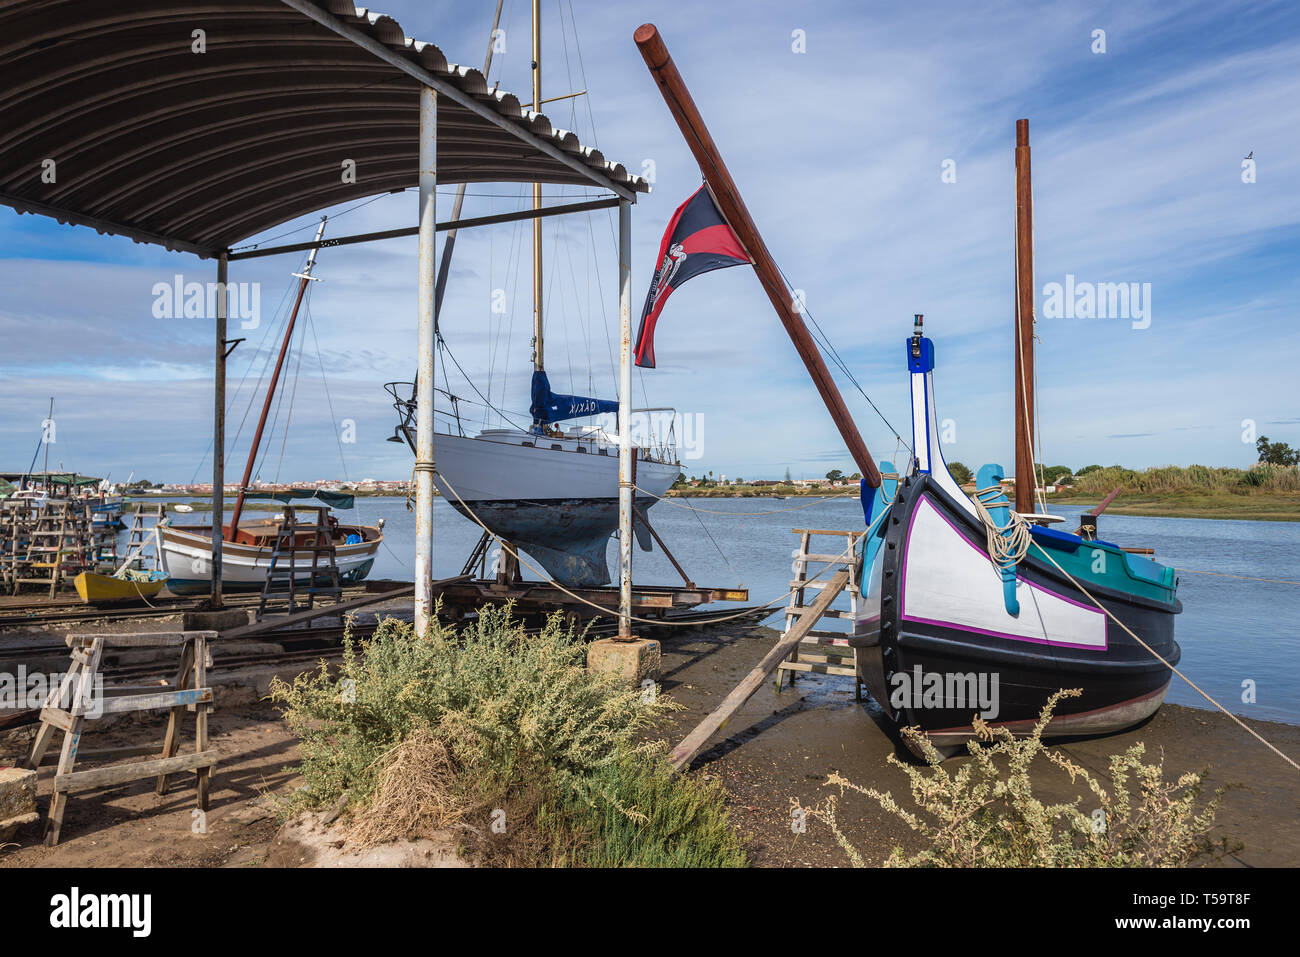 Quai de chantier naval dans lequel Tage traditionnels bateaux sont construits et réparés à Sarilhos Pequenos village de Moita municipalité, Portugal Banque D'Images